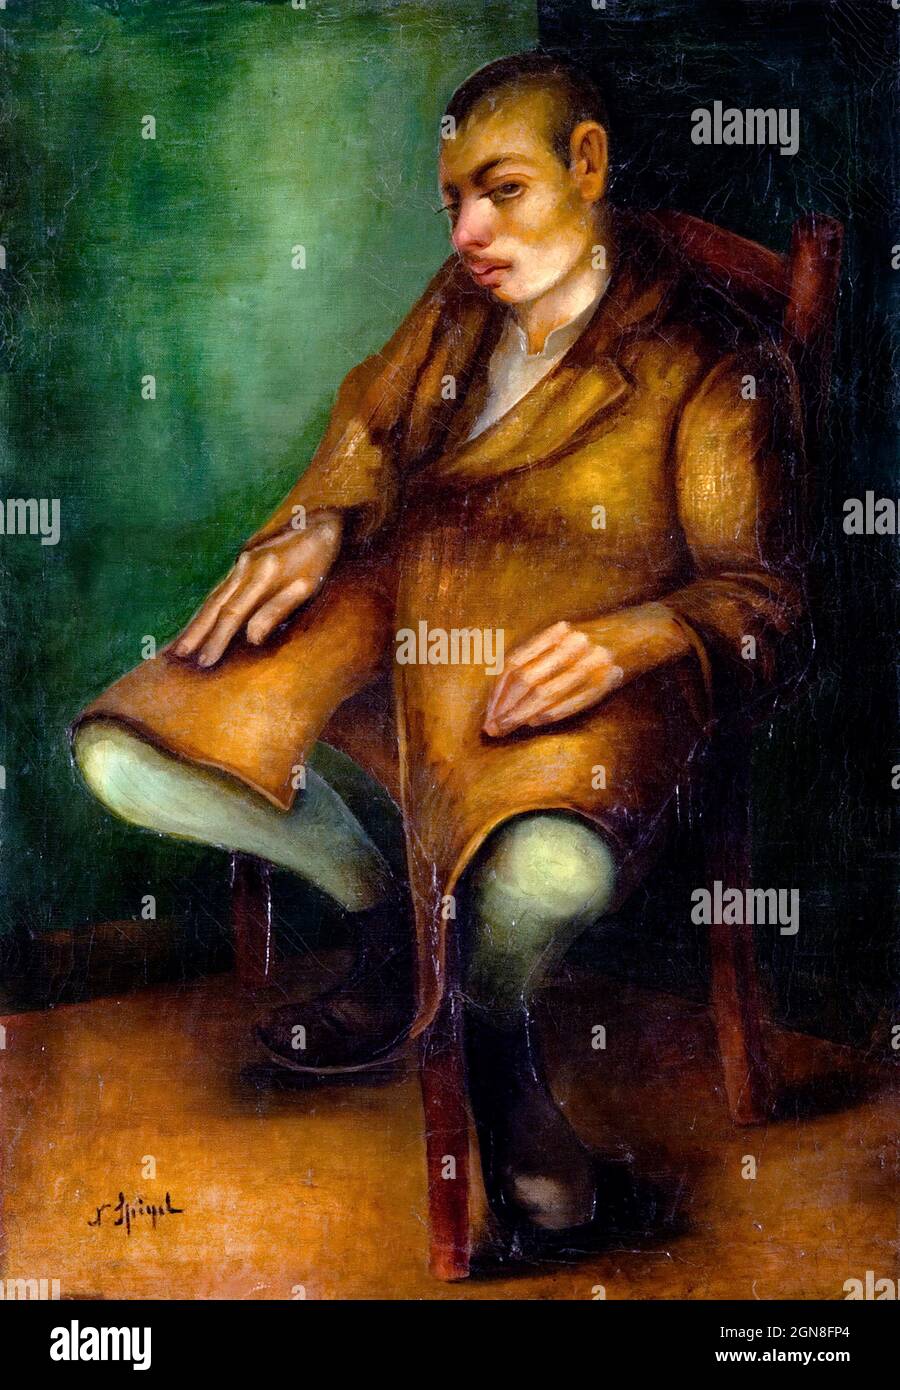 Grotesque par l'artiste juif polonais Natan Spigel (1892-1942), c. 1925 Banque D'Images